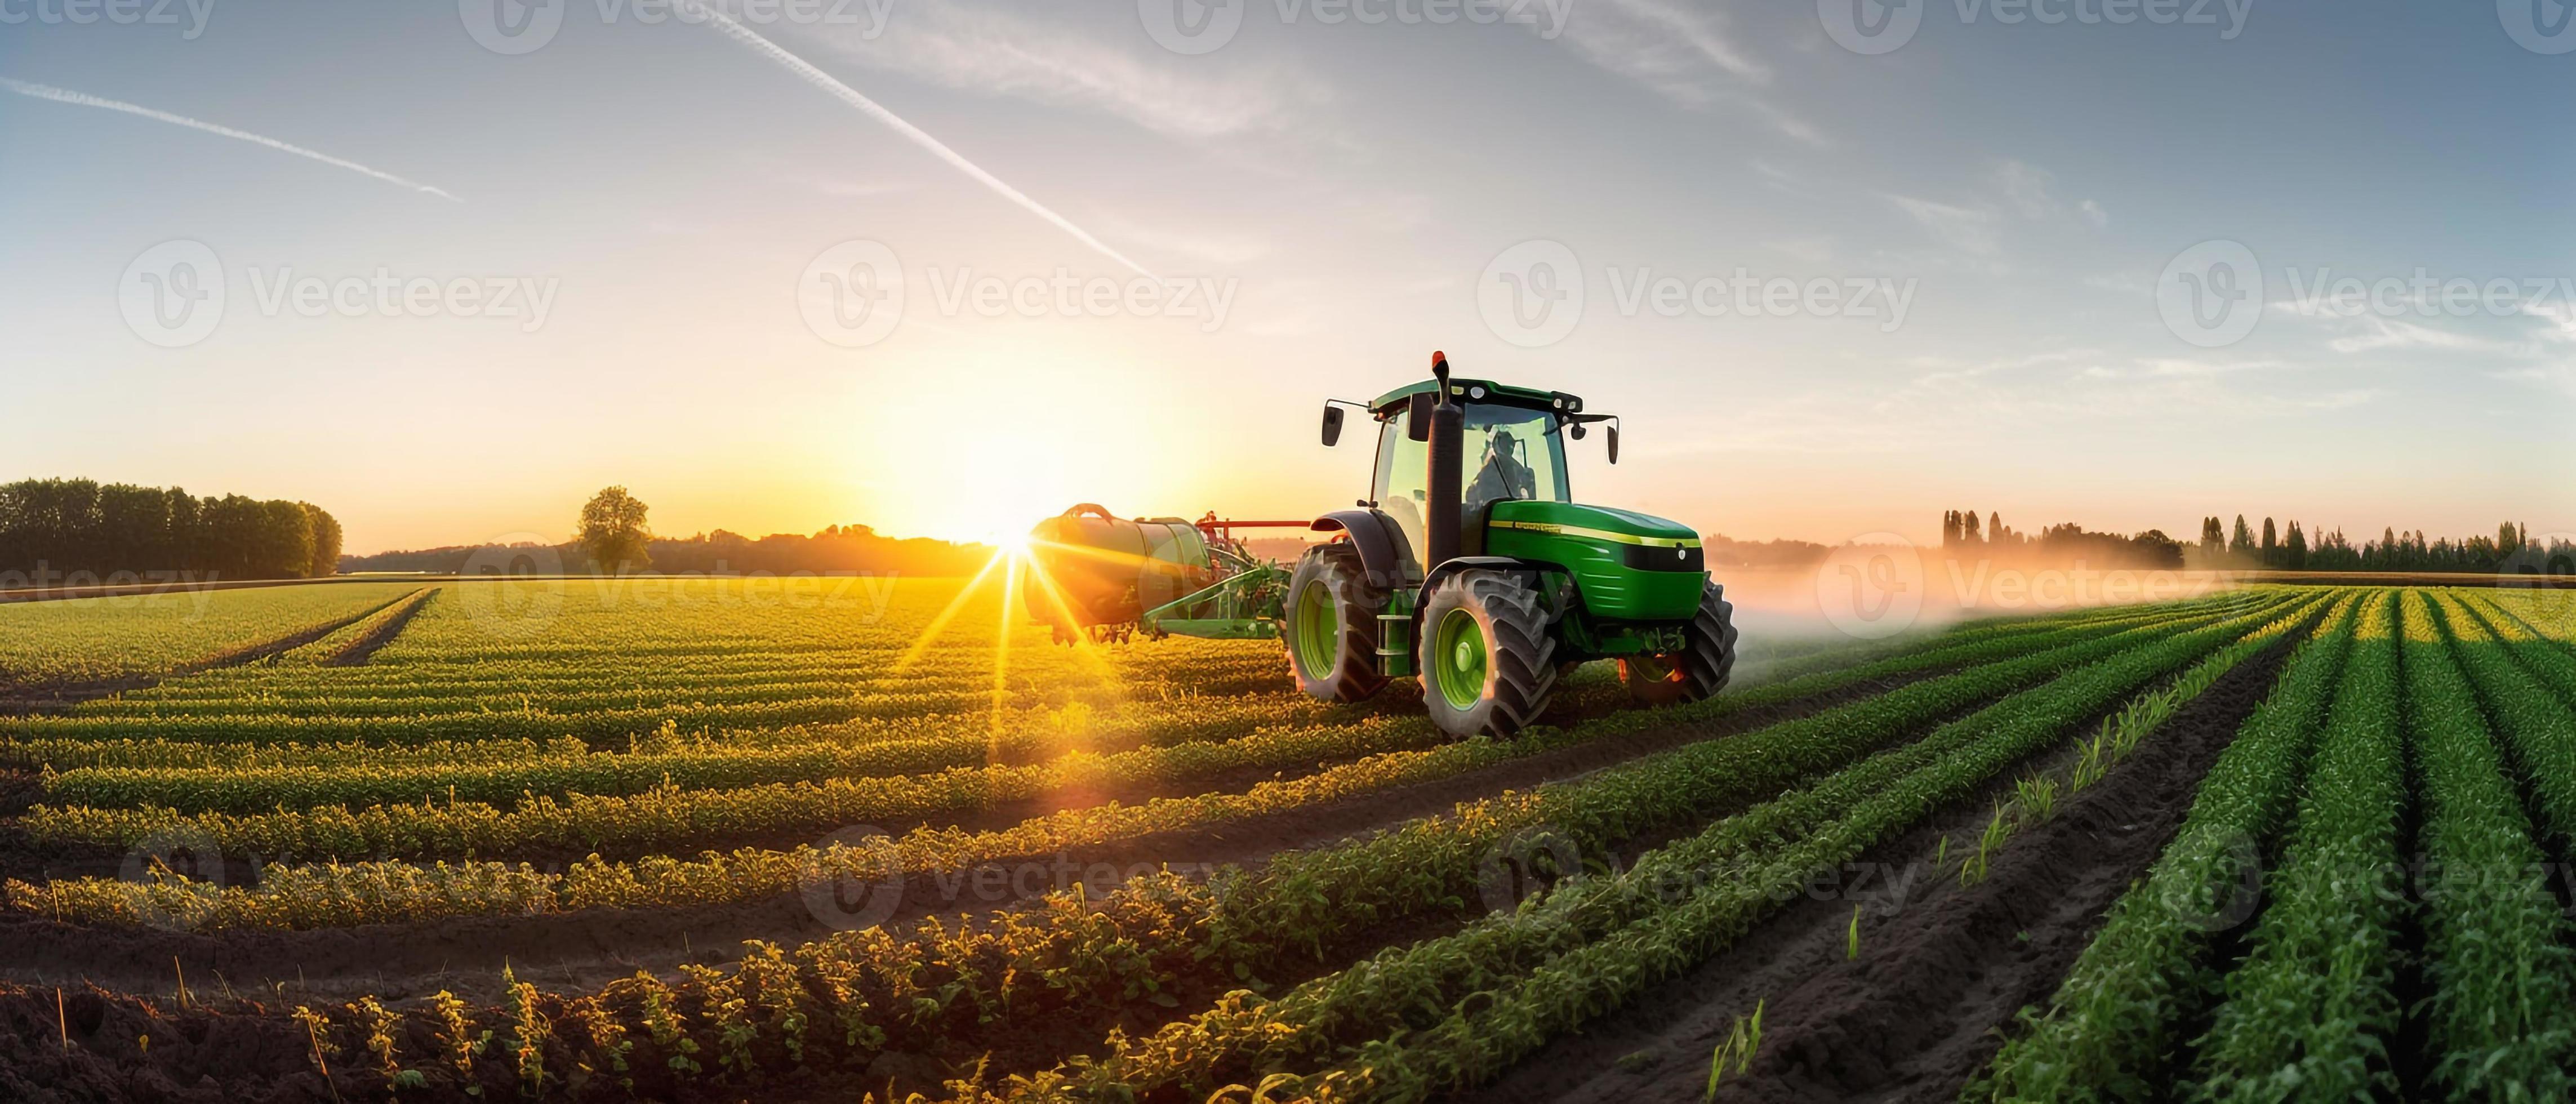  Landwirtschaft Hintergrundbild 4573x1960. Landwirtschaft Traktor Sprühen Pflanzen Im Ein Feld. 23060798 Stock Photo Bei Vecteezy